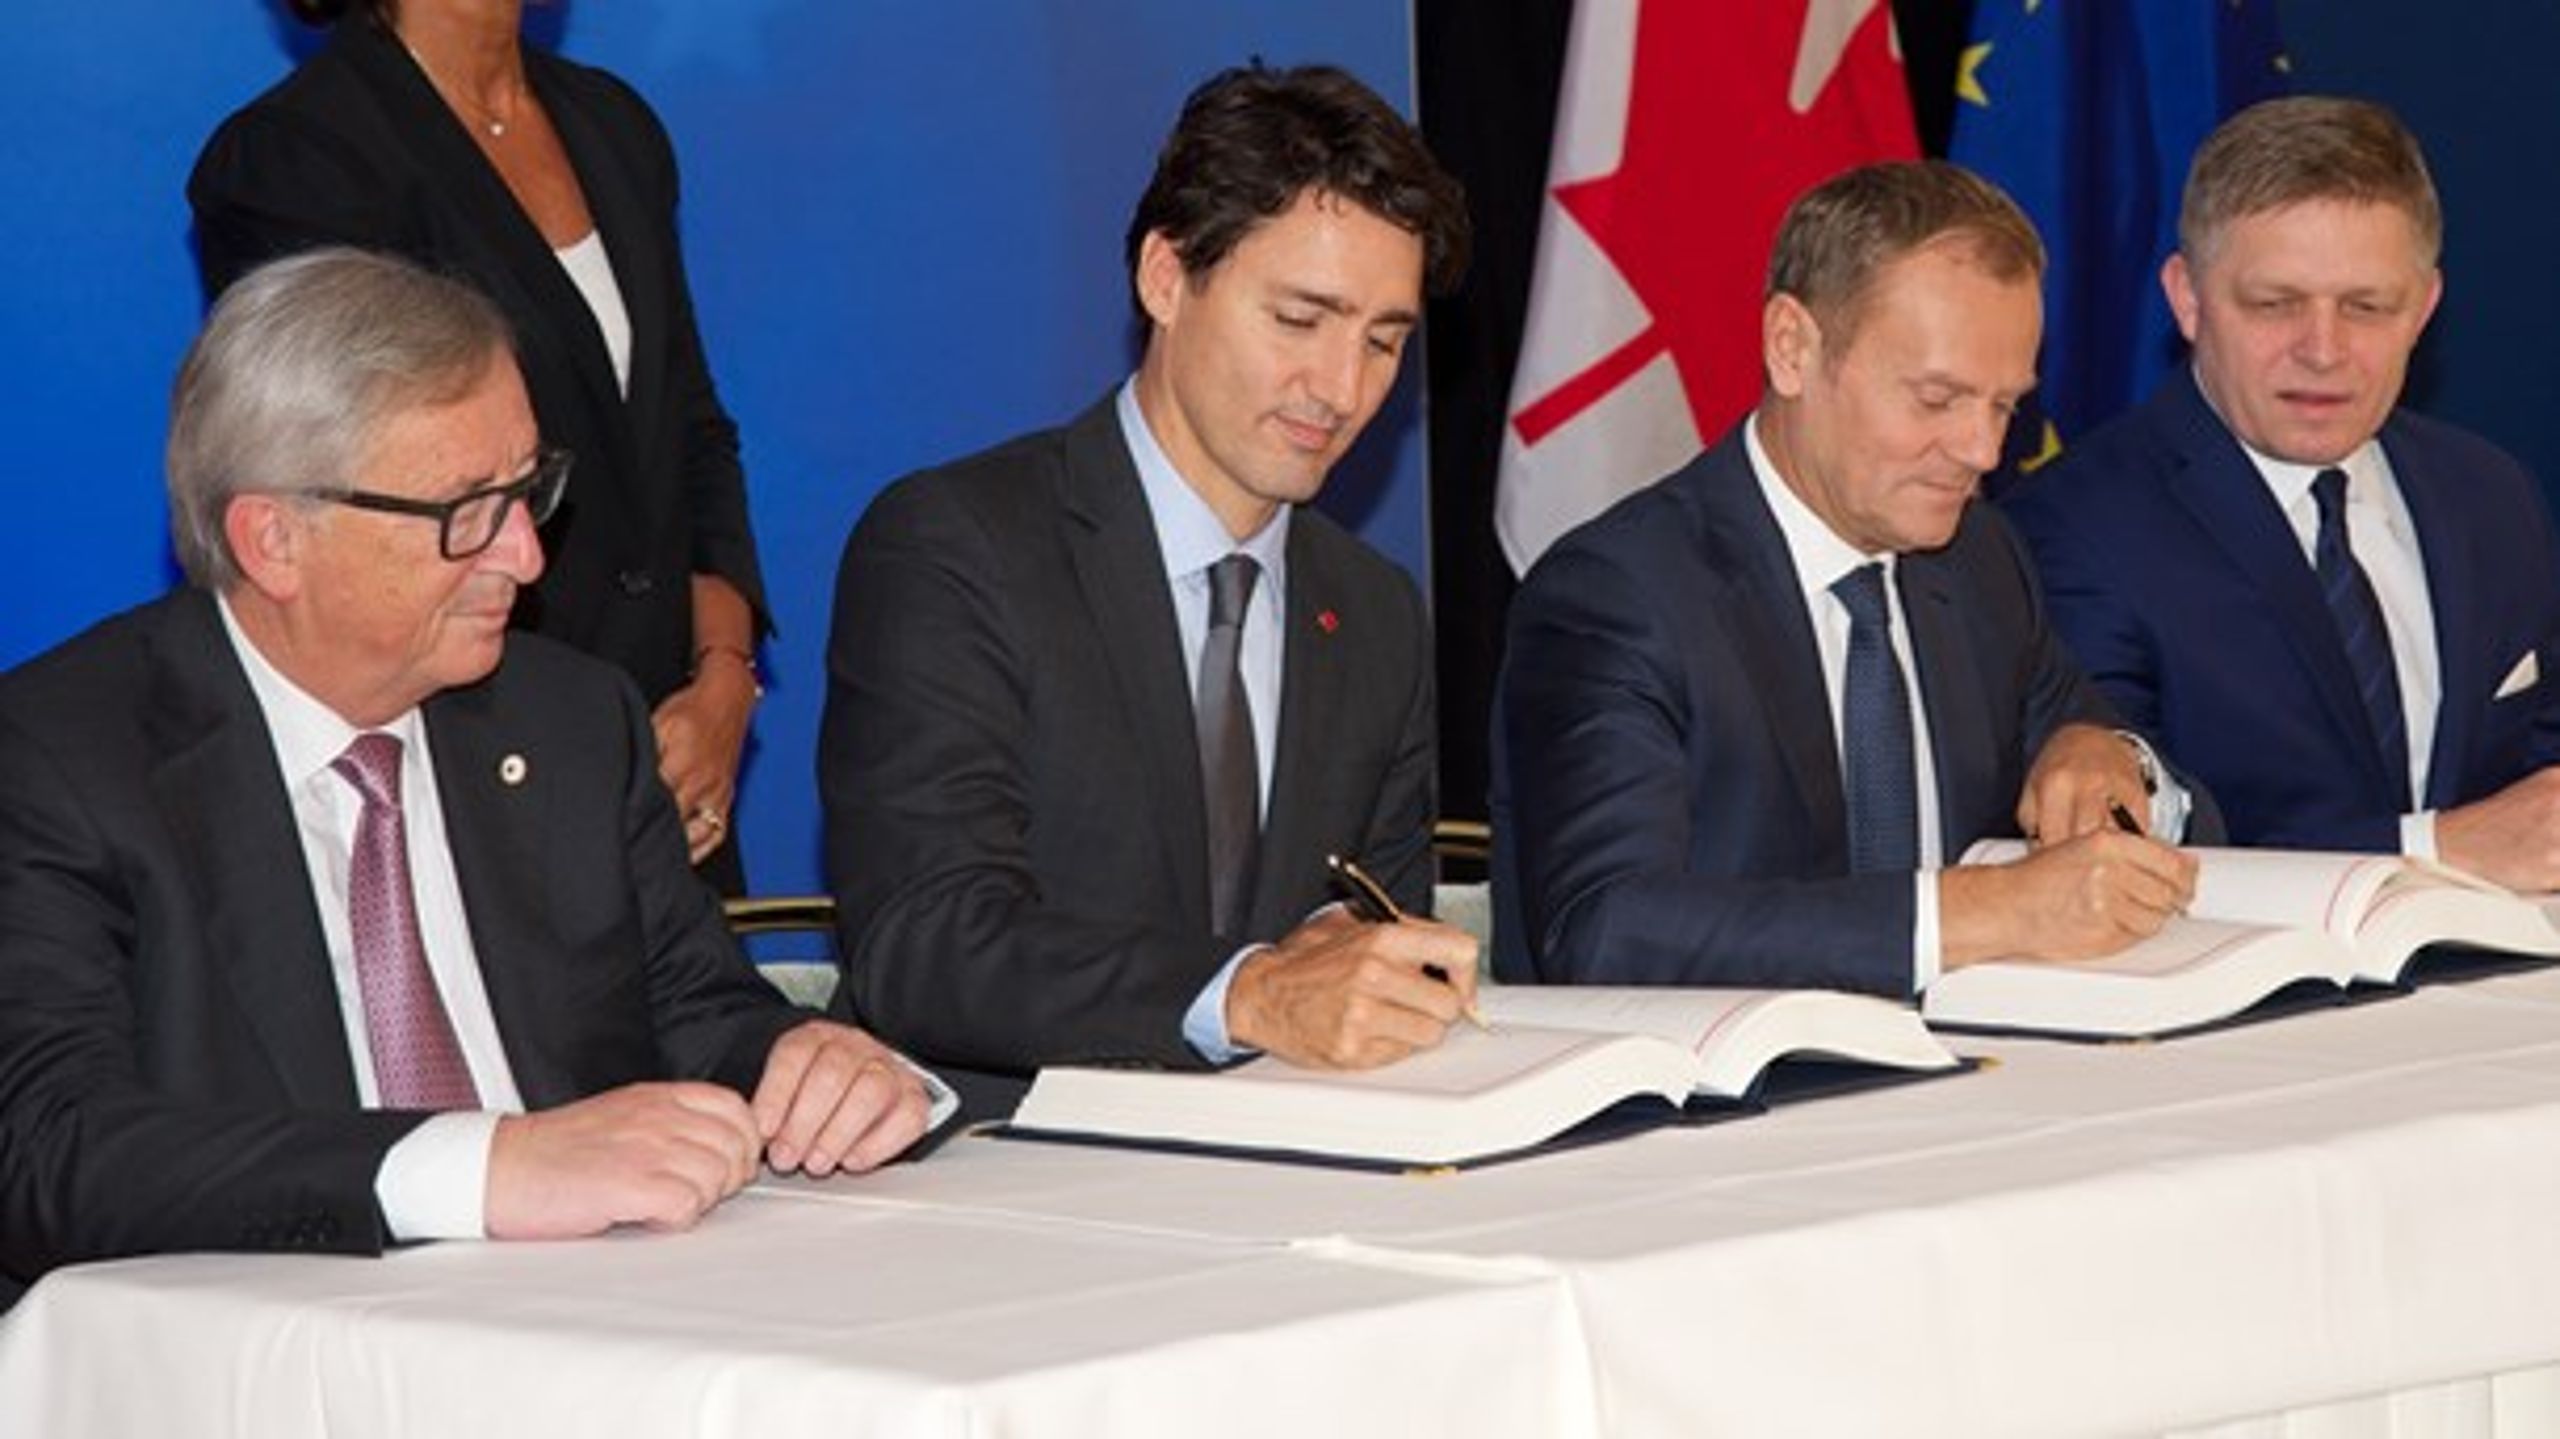 Søndag underskrev EU og Canada en stor frihandelsaftale. Det skete med deltagelse af den canadiske premierminister, Justin Trudeau, EU-Kommissionens formand, Jean-Claude Juncker, og formand for Det Europæiske Råd, Donald Tusk.